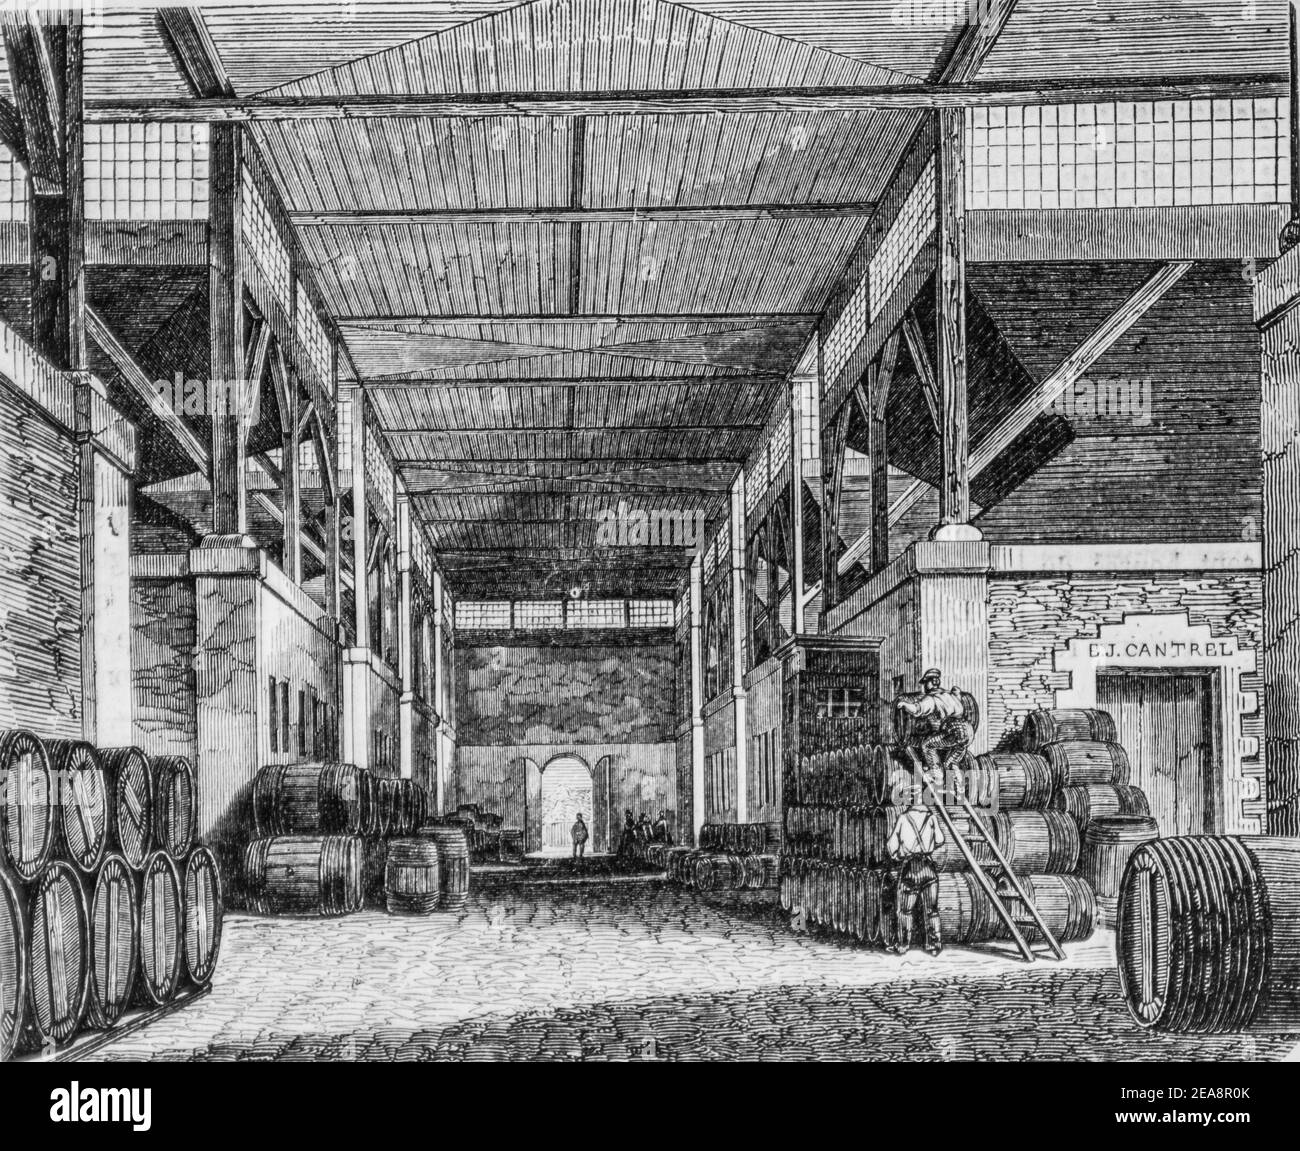 cellier a vins, tableau de paris par edmond texier, éditeur paulin et le chevalier 1852 Banque D'Images